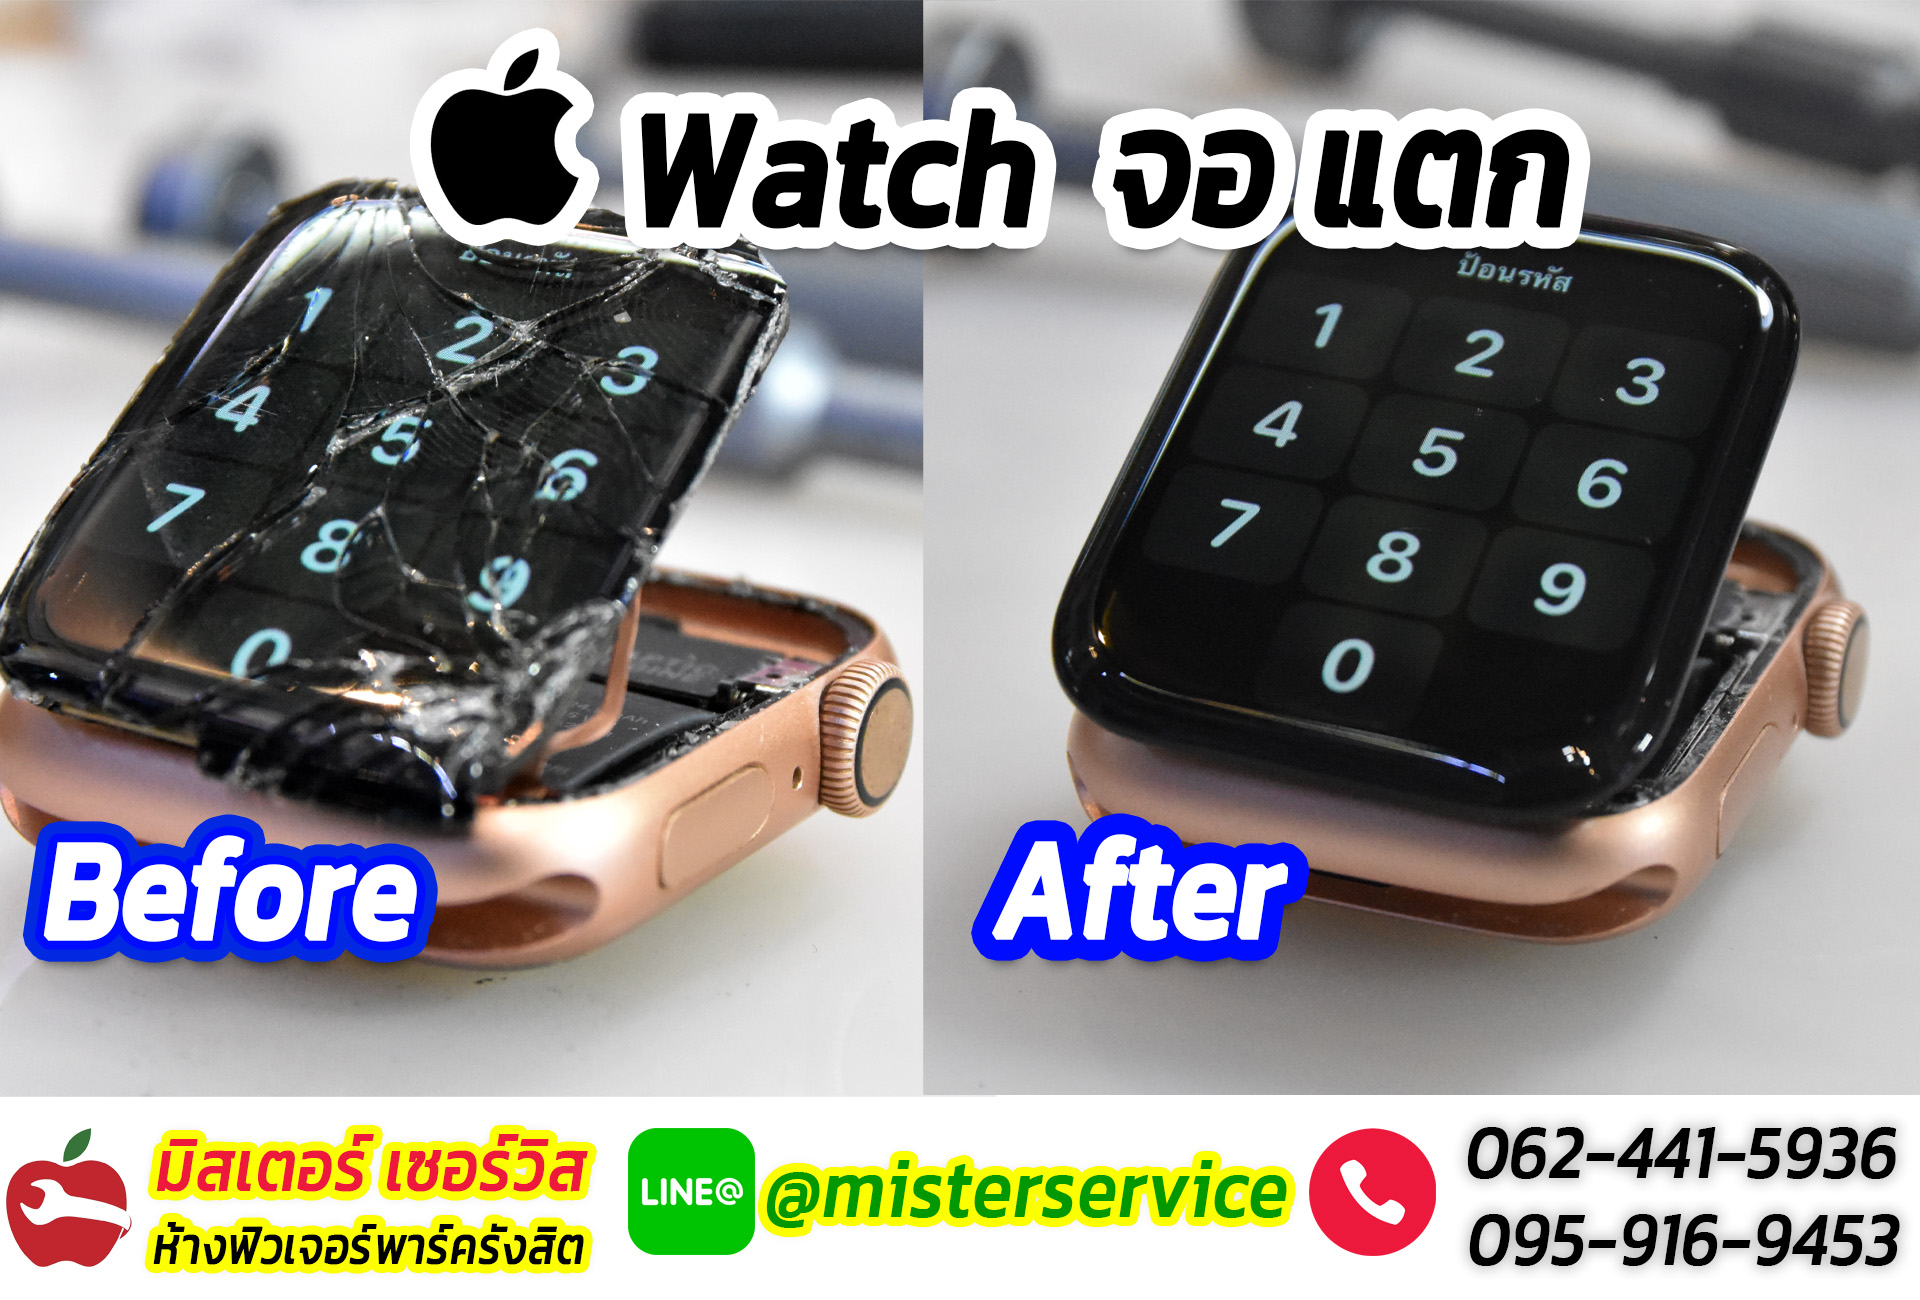 ซ่อม apple watch เมืองทองธานี ปากเกร็ด นนทบุรี